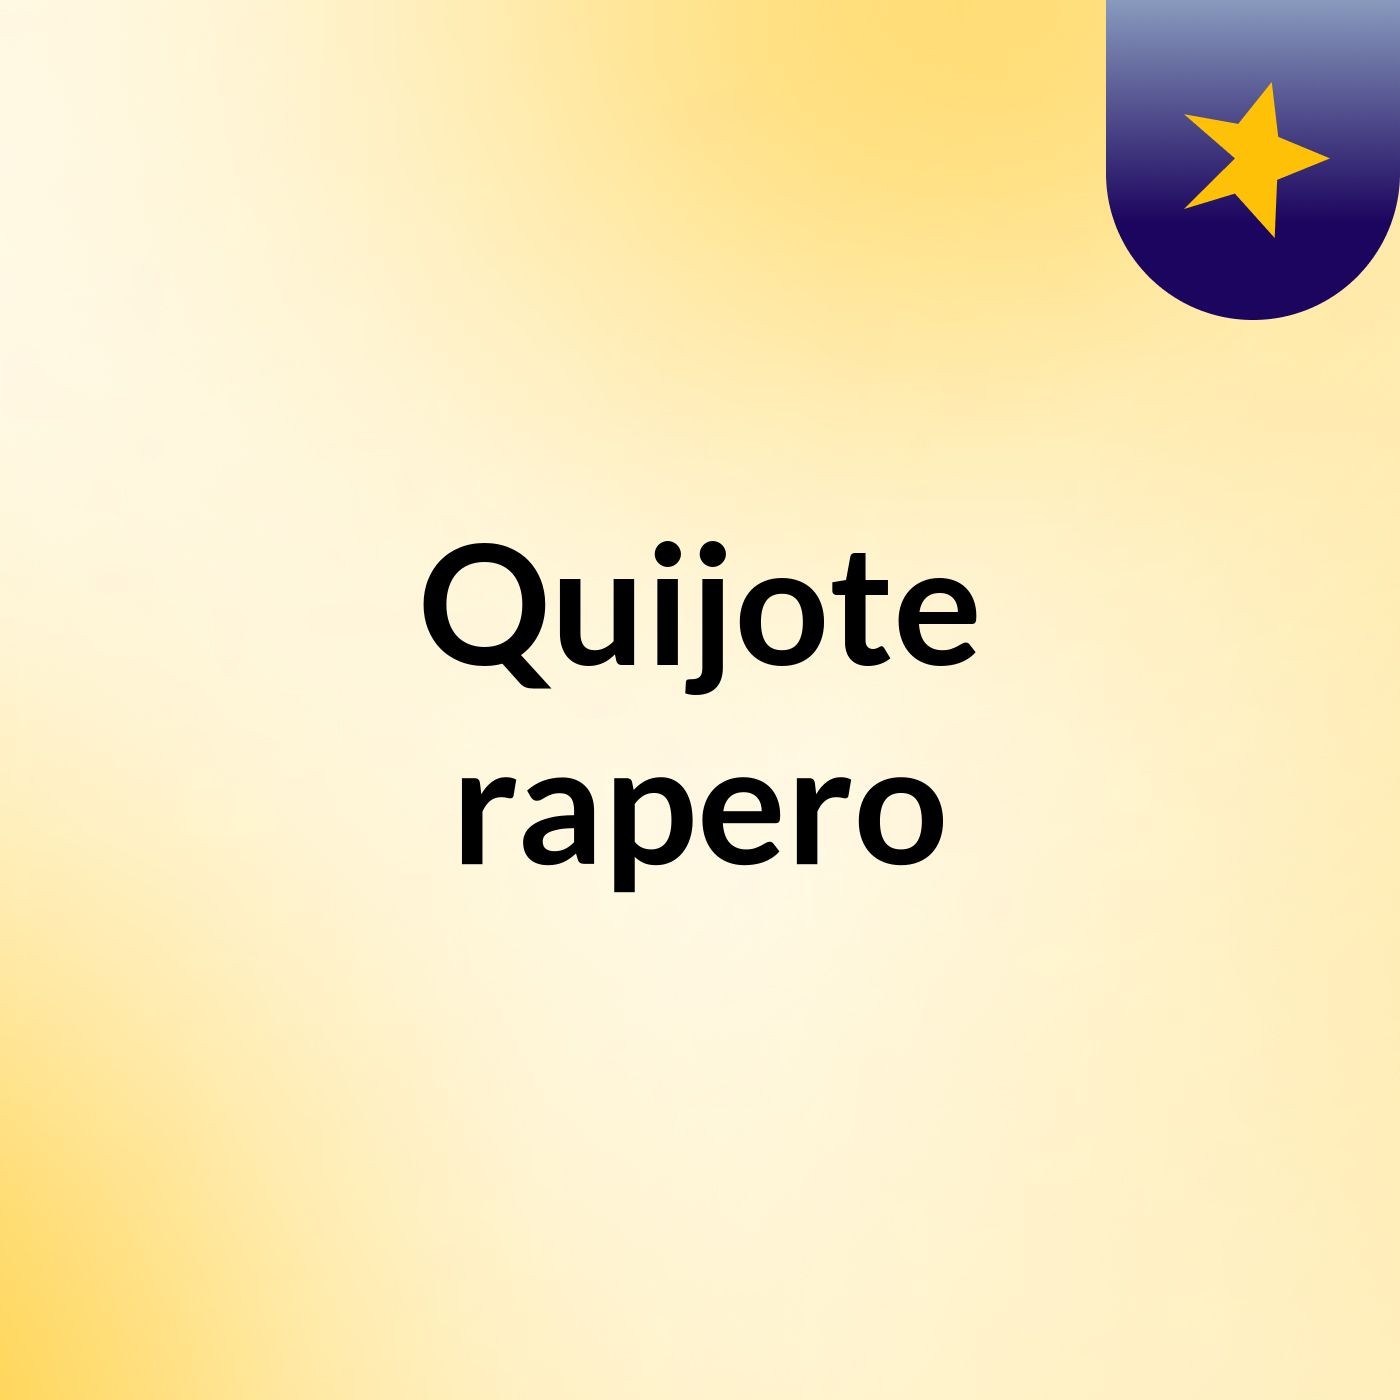 Quijote rapero